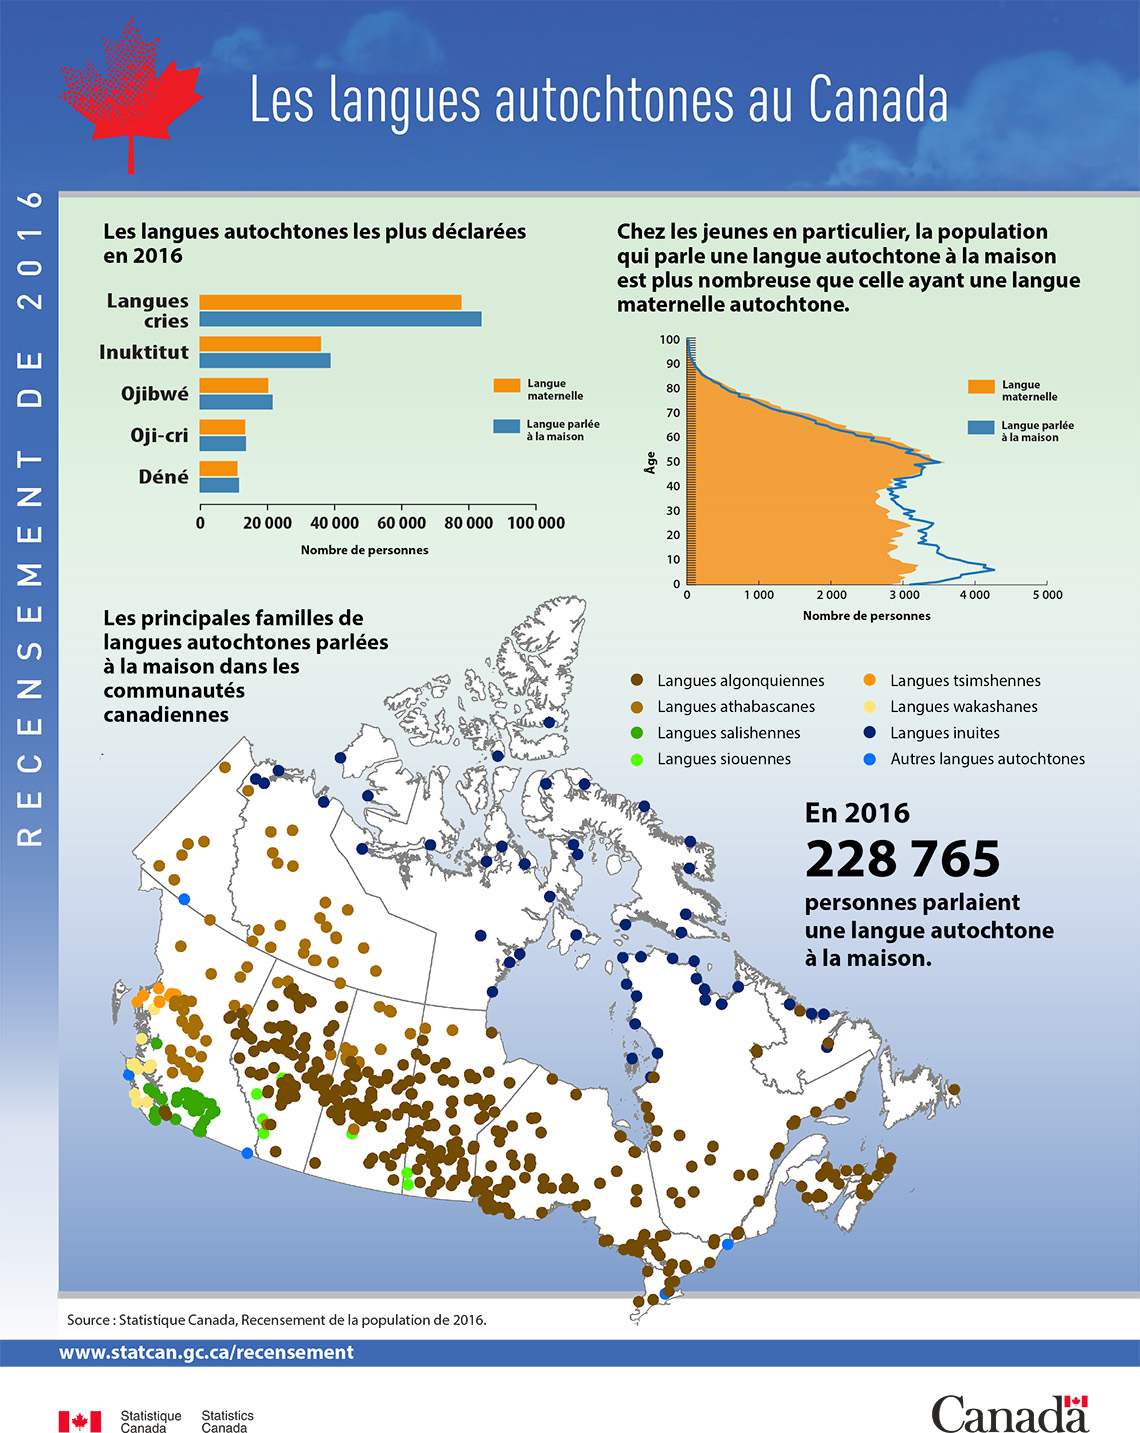 Infographie : Les langues autochtones au Canada, Recensement de la population de 2016